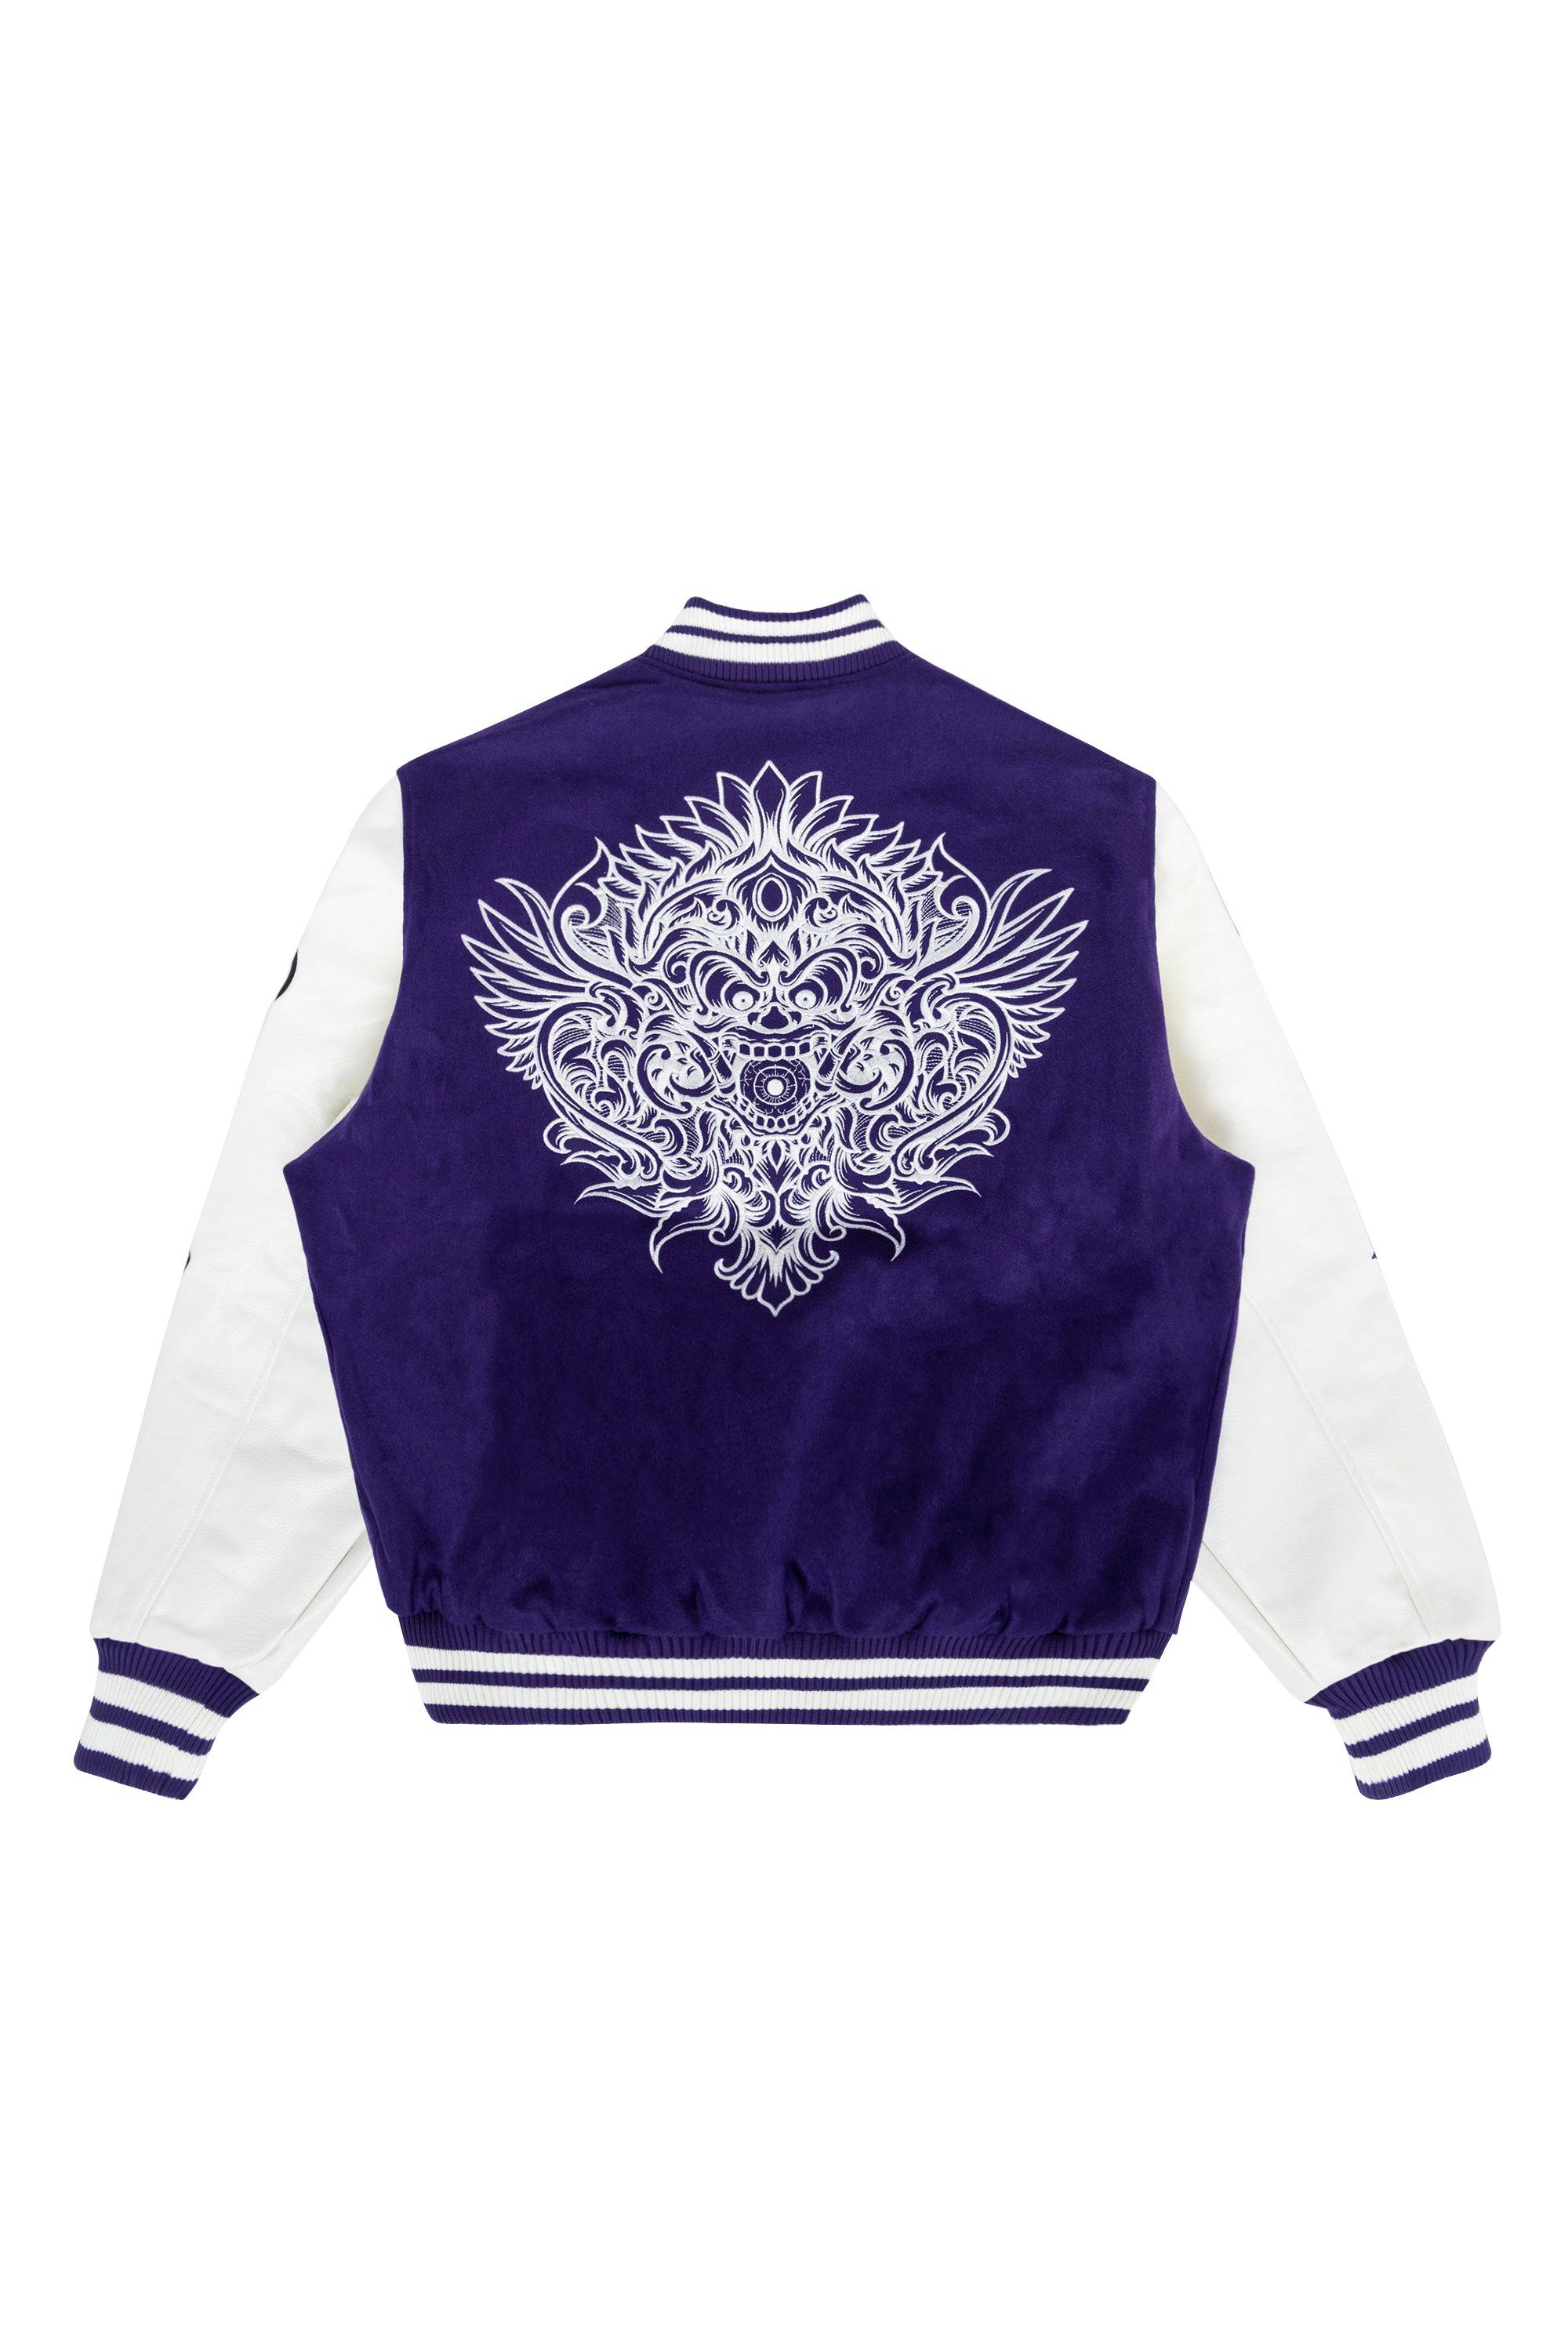 Dokkaebi Fashion Varsity Jacket - Purple - Smoke Rise